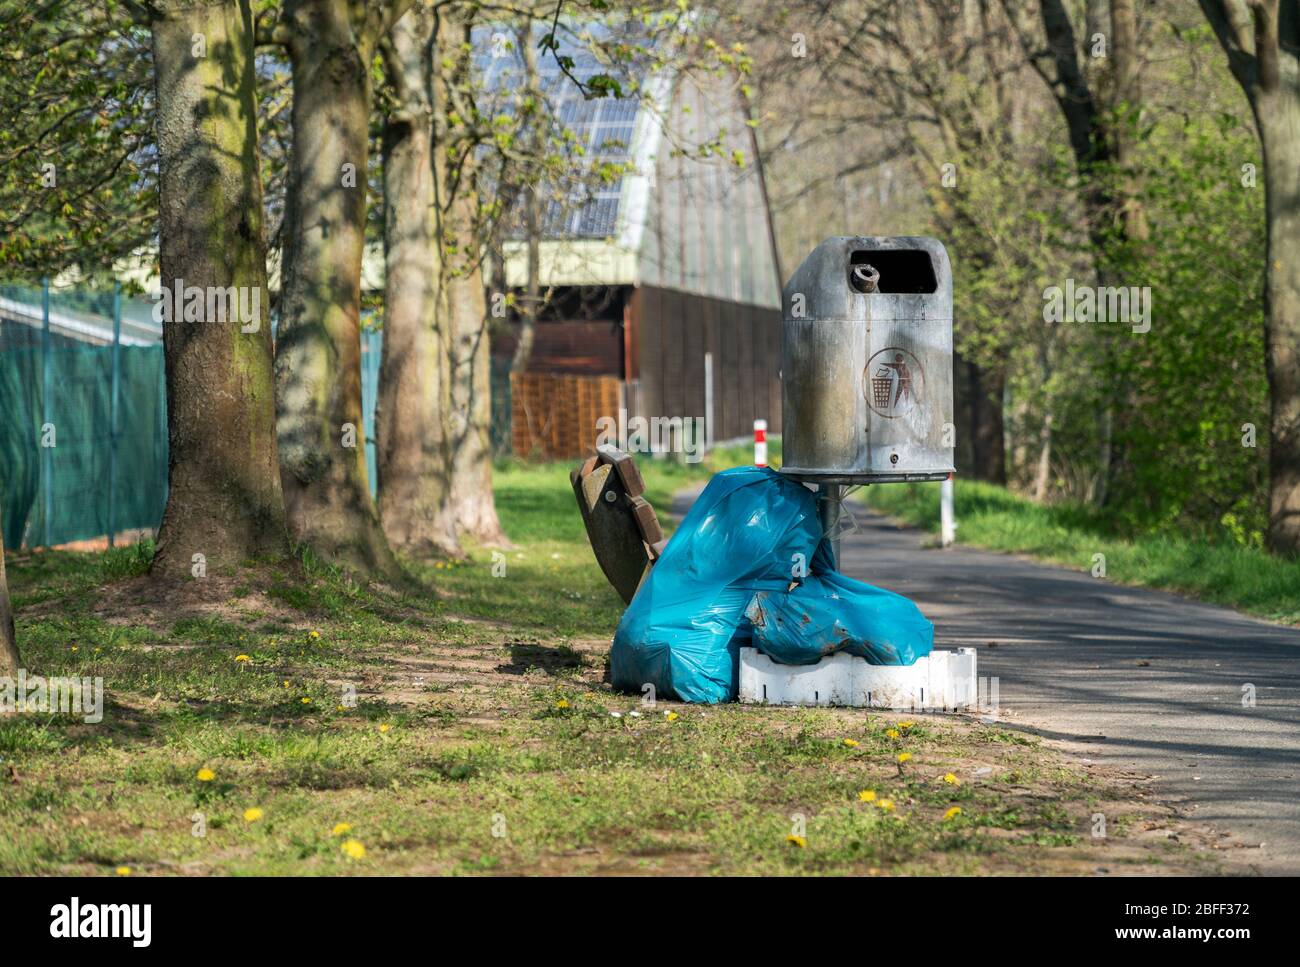 Sacchetti di plastica blu riempiti di immondizia vicino ad un cestino di metallo vuoto possono in un parco pubblico. Inquinamento ambientale, smaltimento illegale dei rifiuti in natura Foto Stock